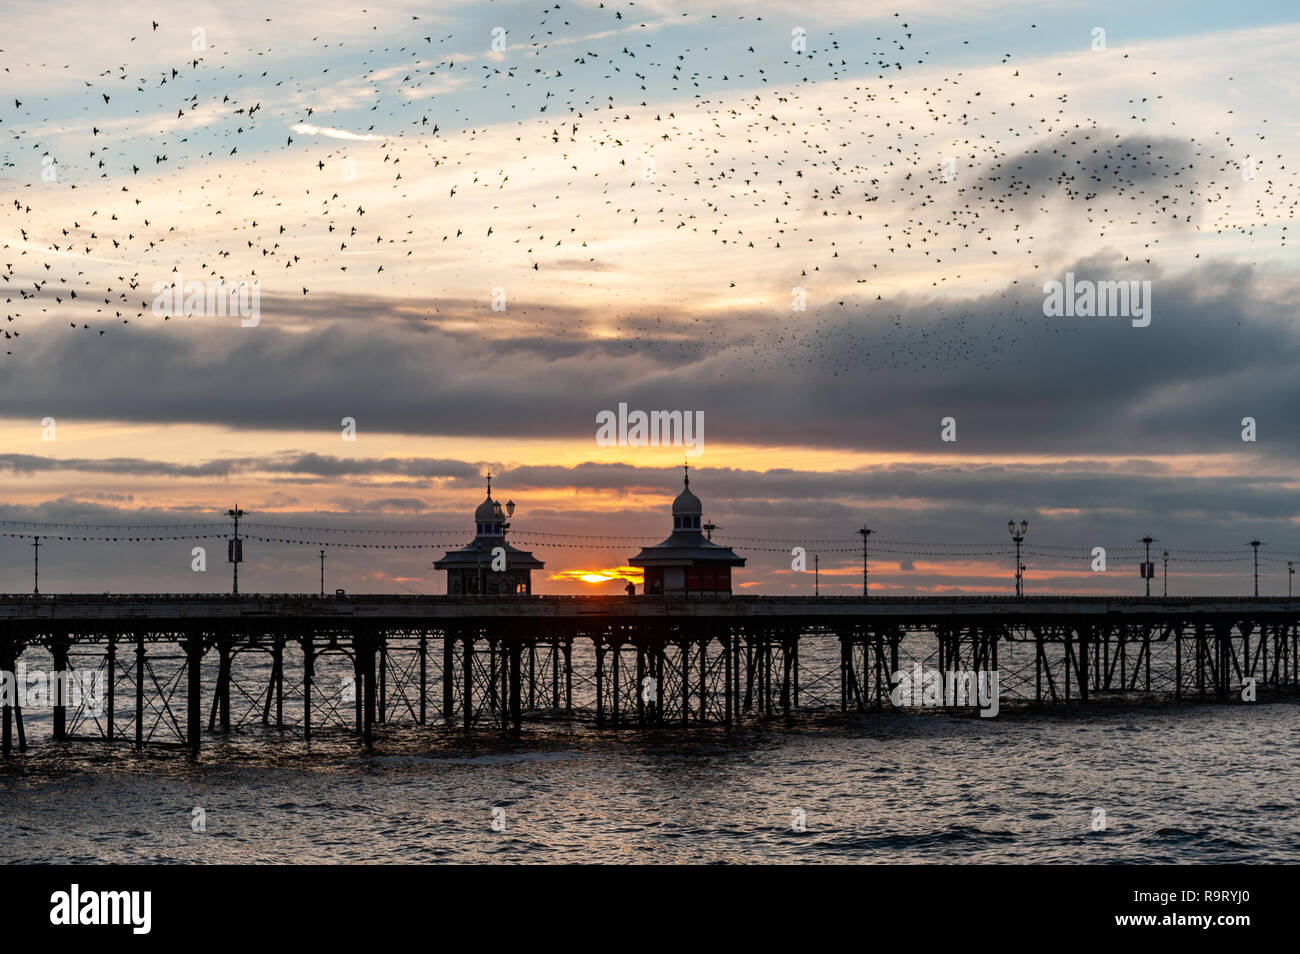 Blackpool, Großbritannien. 28th Dez 2018. Tausende von Staren fliegen in Murmeln um Blackpool North Pier, bevor sie für die Nacht auf den Beinen des Piers aufsteigen. Quelle: AG News/Alamy Live News. Stockfoto